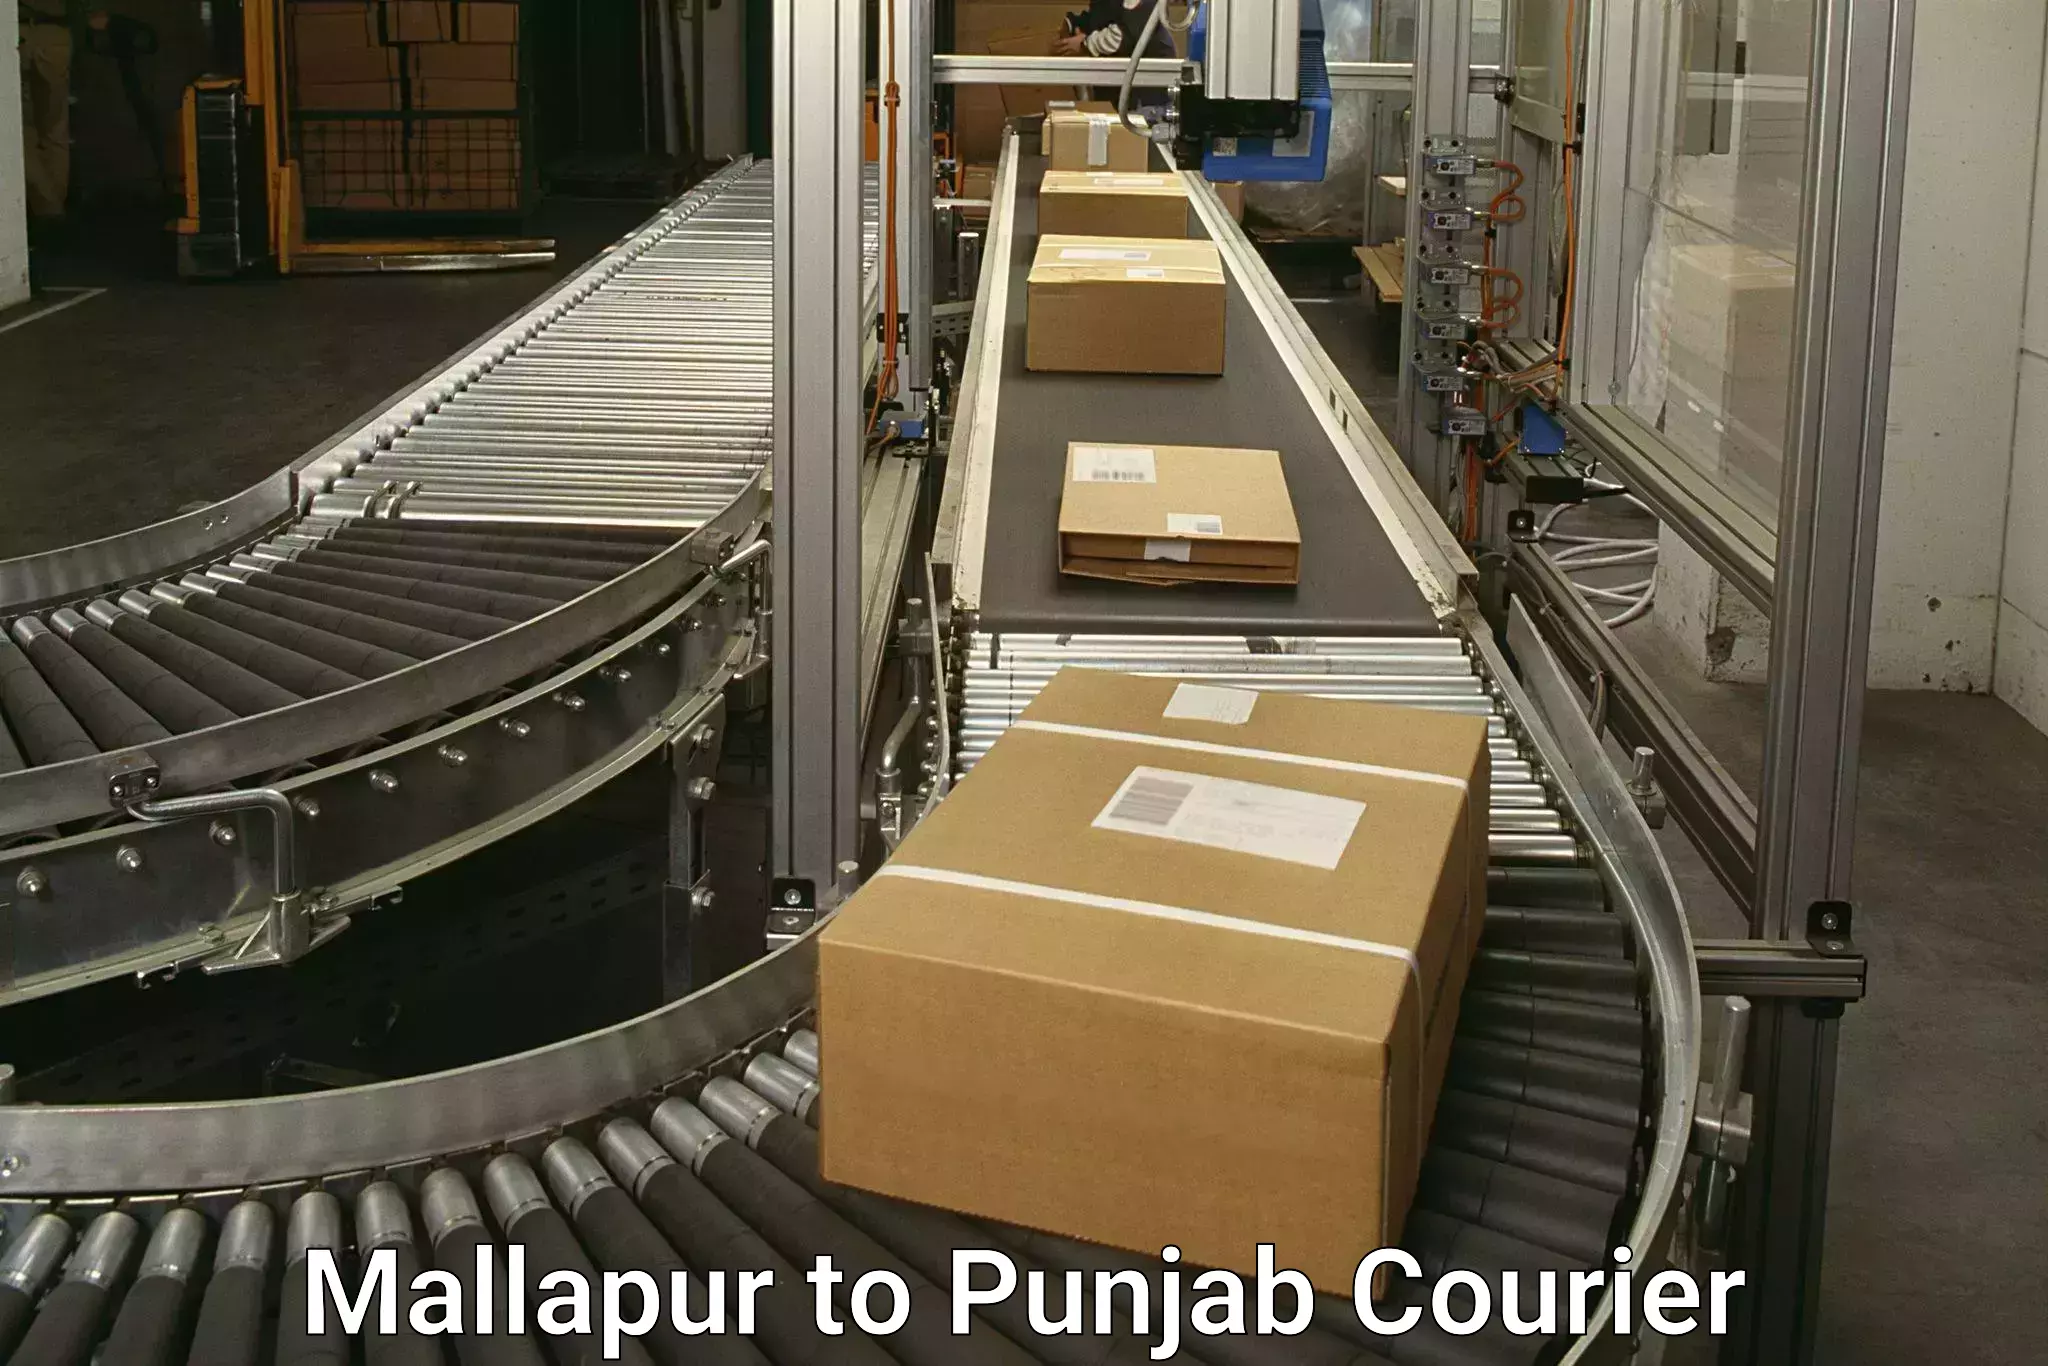 International courier networks Mallapur to Sirhind Fatehgarh